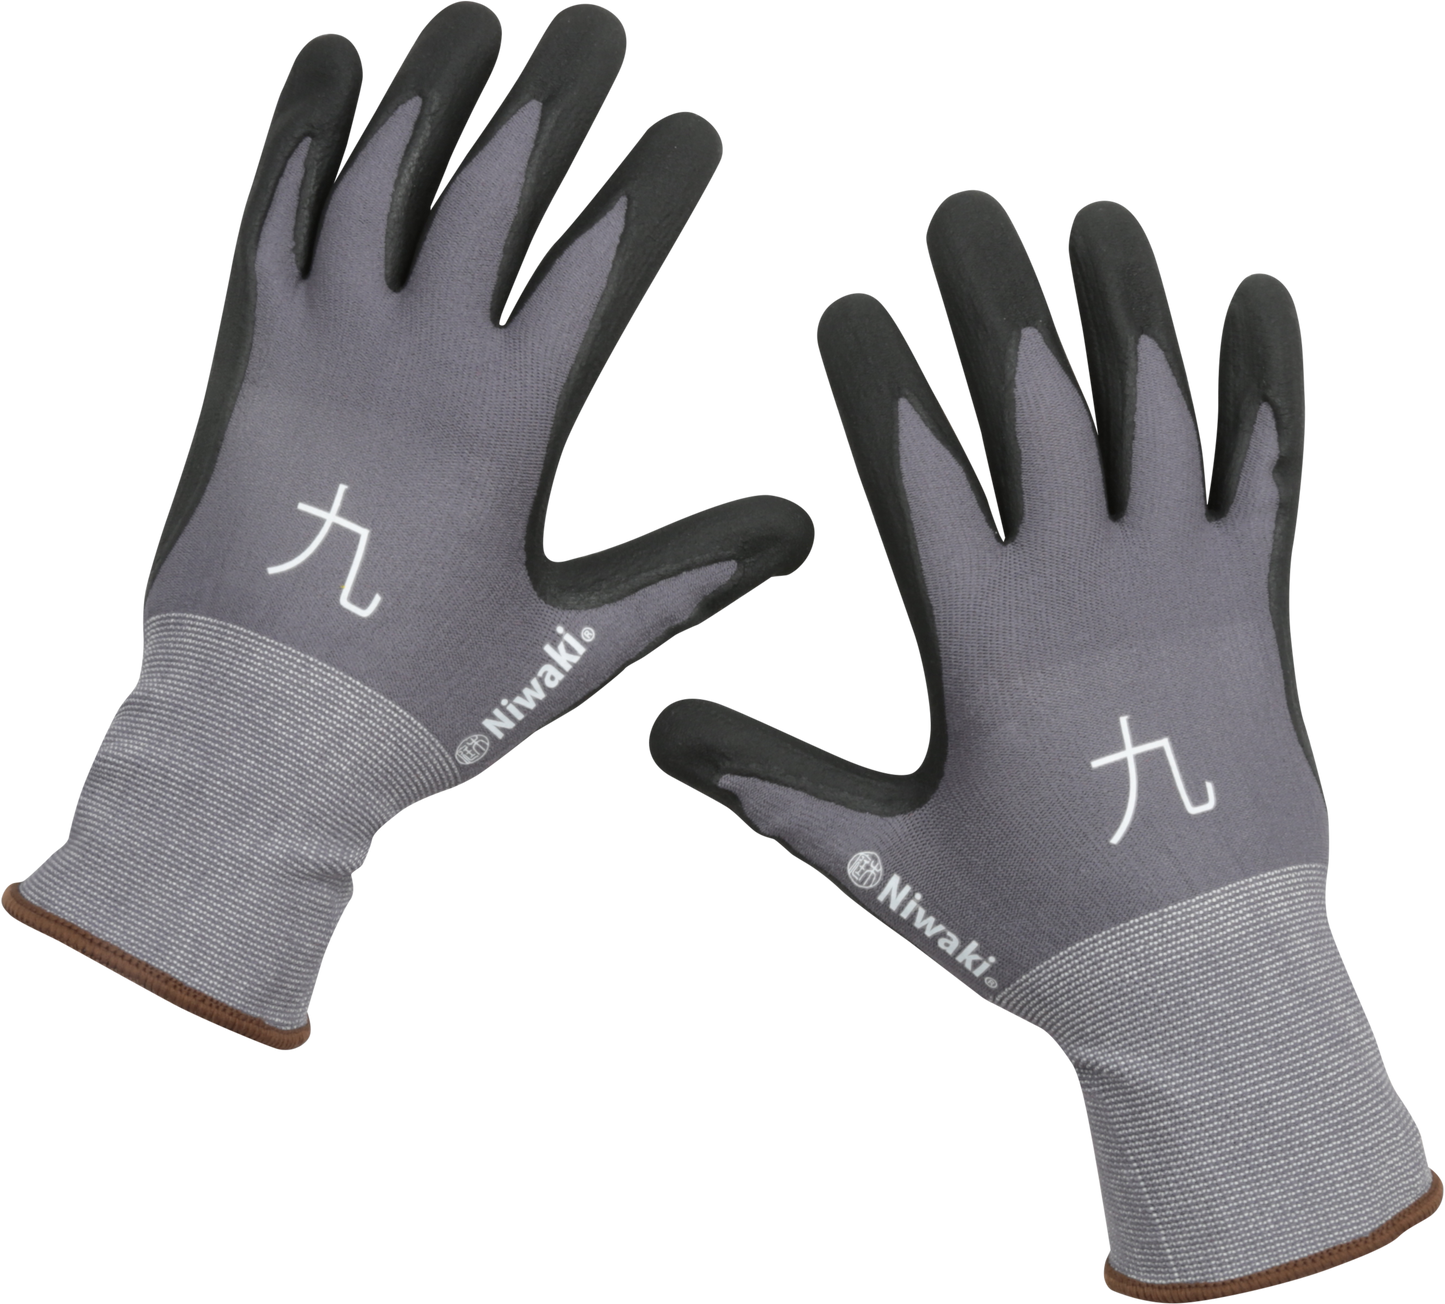 Niwaki Gardening Gloves - Large